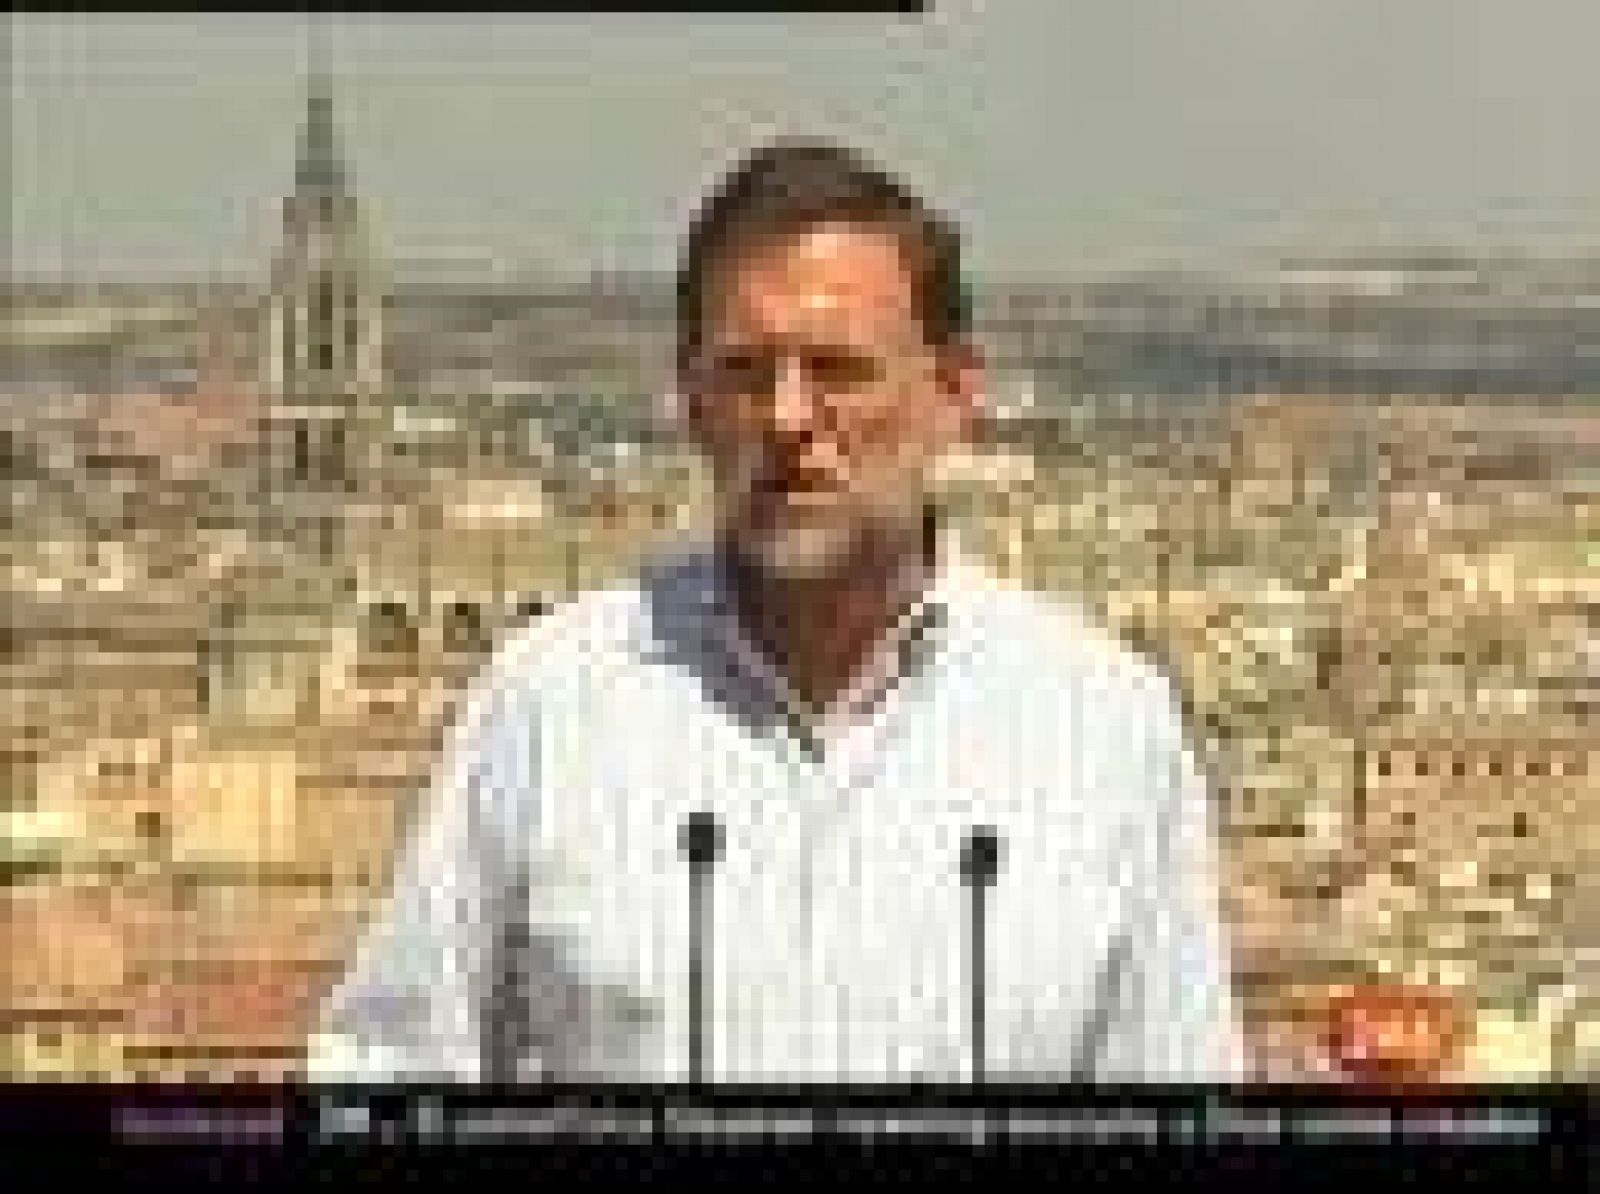 El presidente del PP, Mariano Rajoy, confirma a Francisco Camps, presidente de la Comunidad Valenciana, como candidato del partido a las elecciones autonómicas de 2011, aunque ha rehusado comentar el nuevo informe policial conocido sobre la presunta financiación ilegal del PP en esta región.